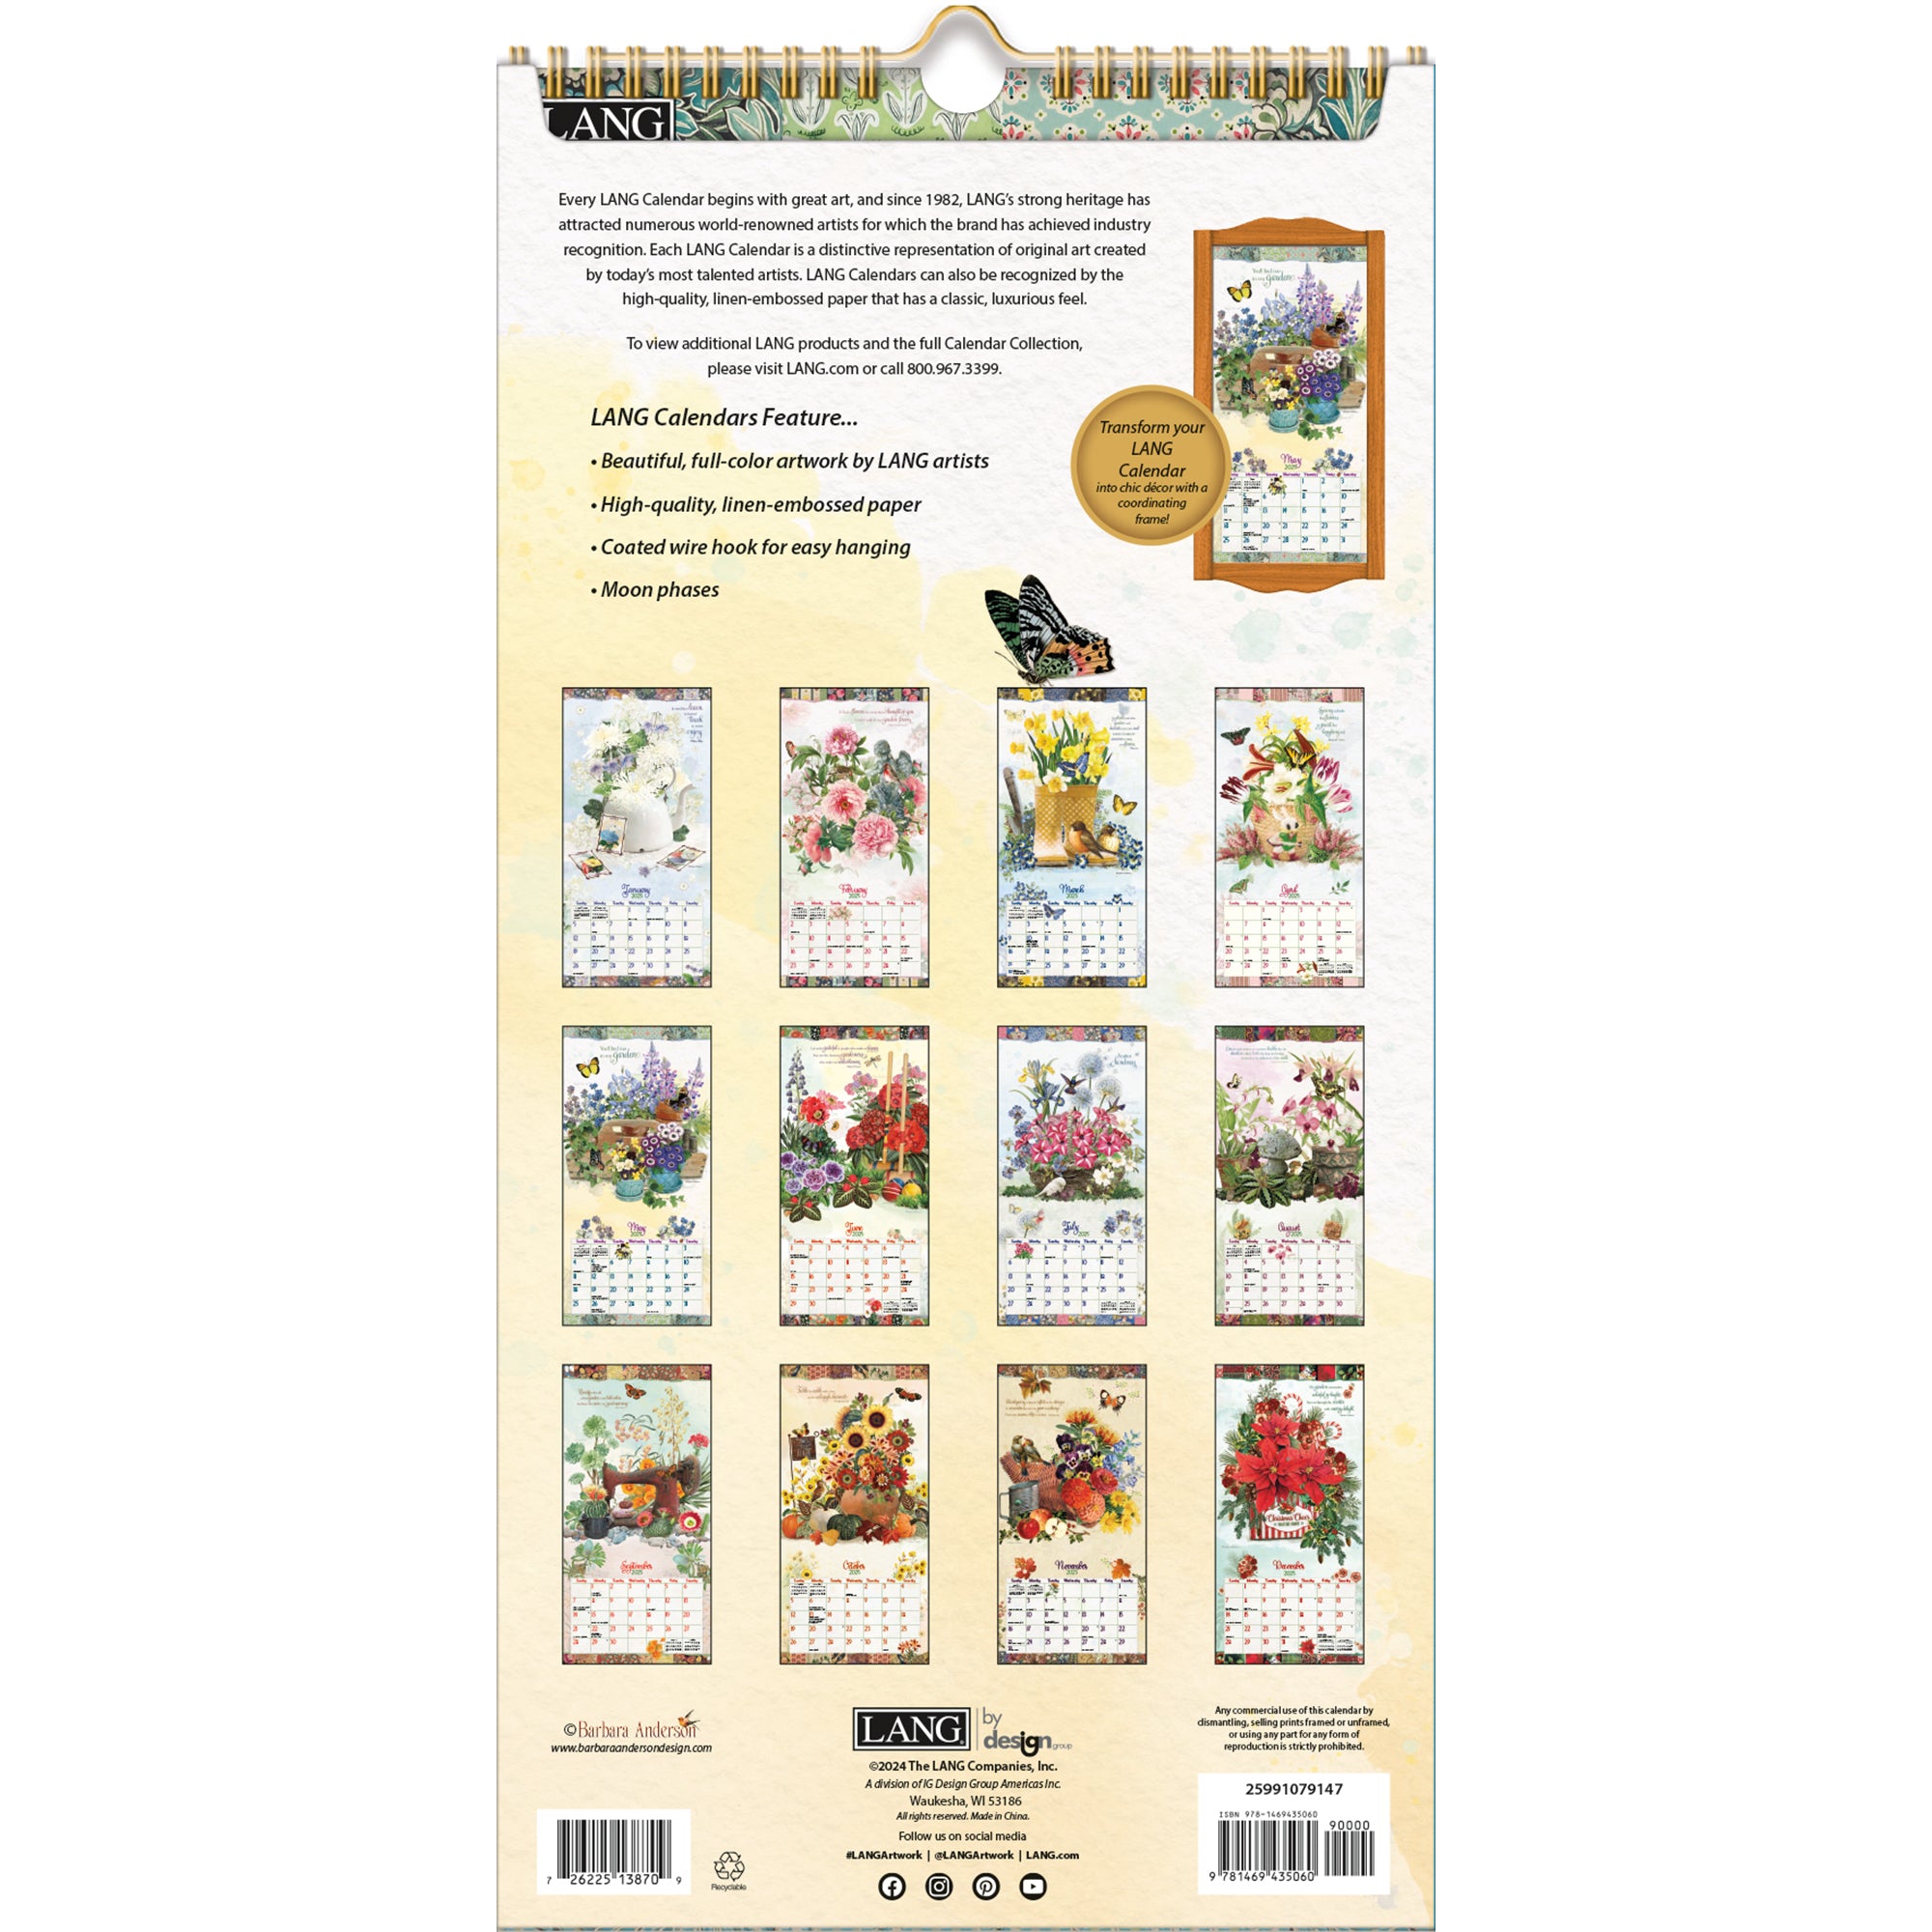 2025 Garden Botanicals - Slim Wall Calendar